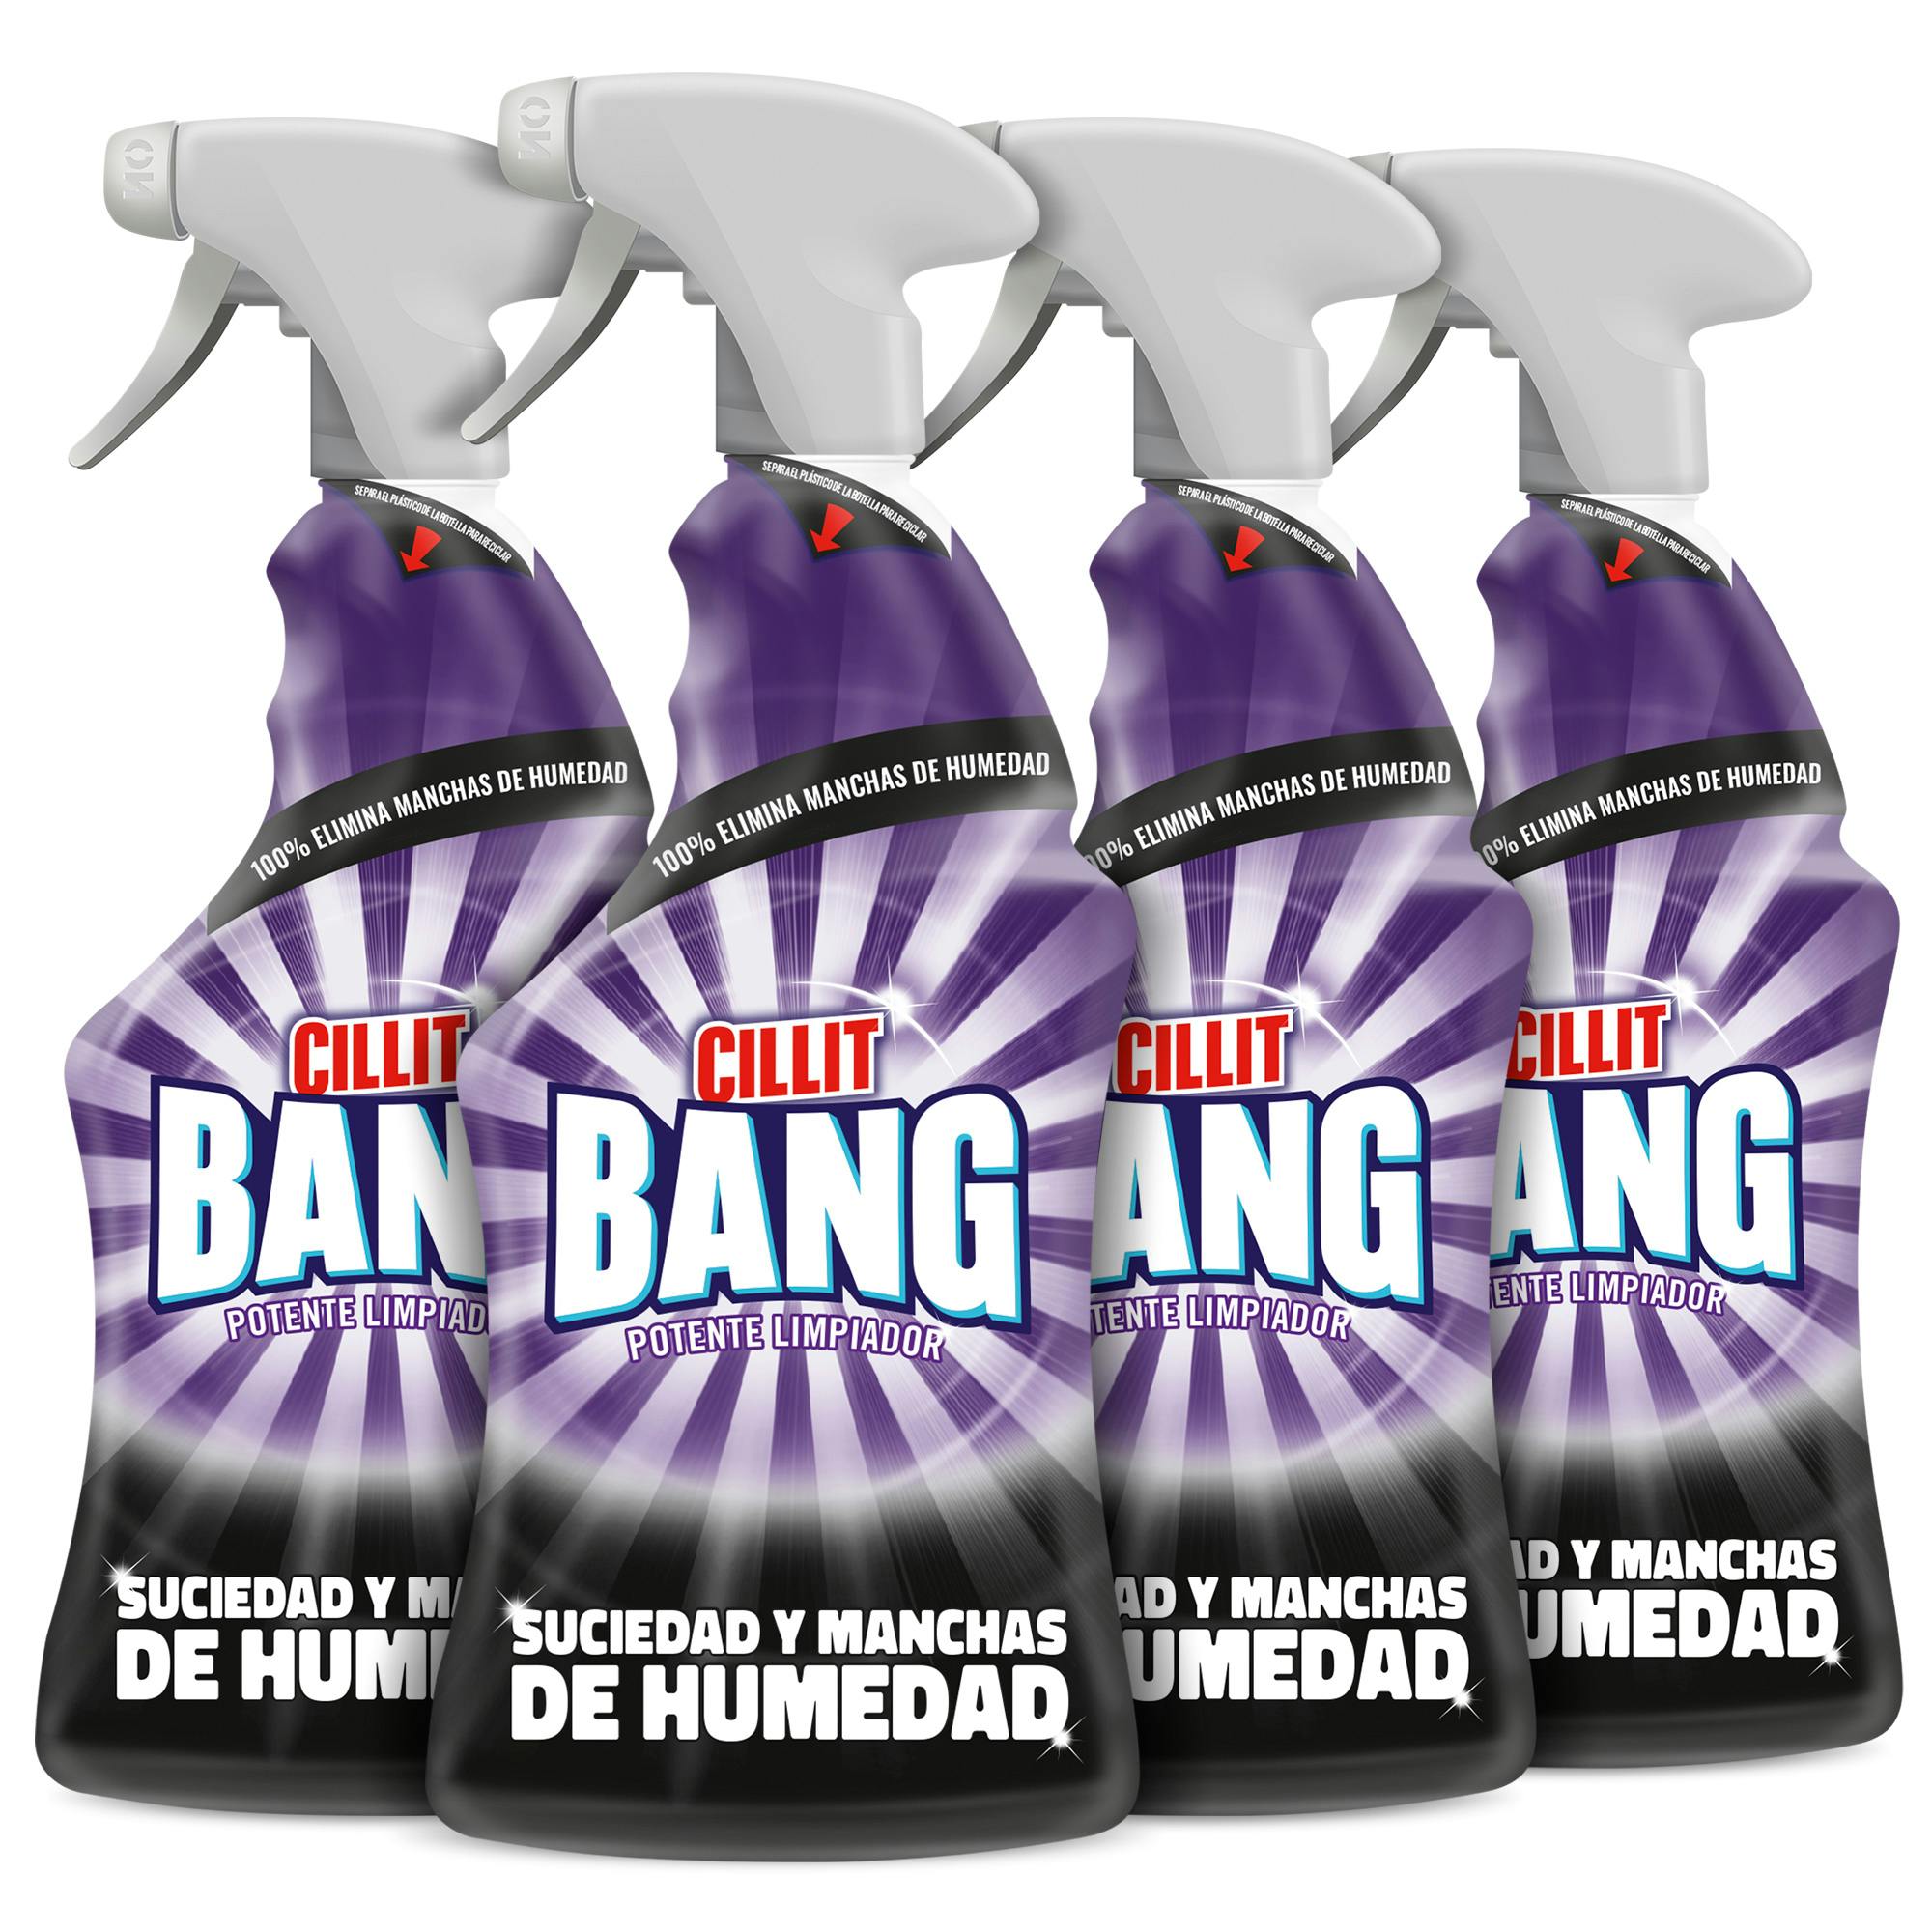 3 Botellas de Cillit Bang en Spray contra suciedad, manchas de moho y  humedad (3x750ml) por sólo 11,00€.